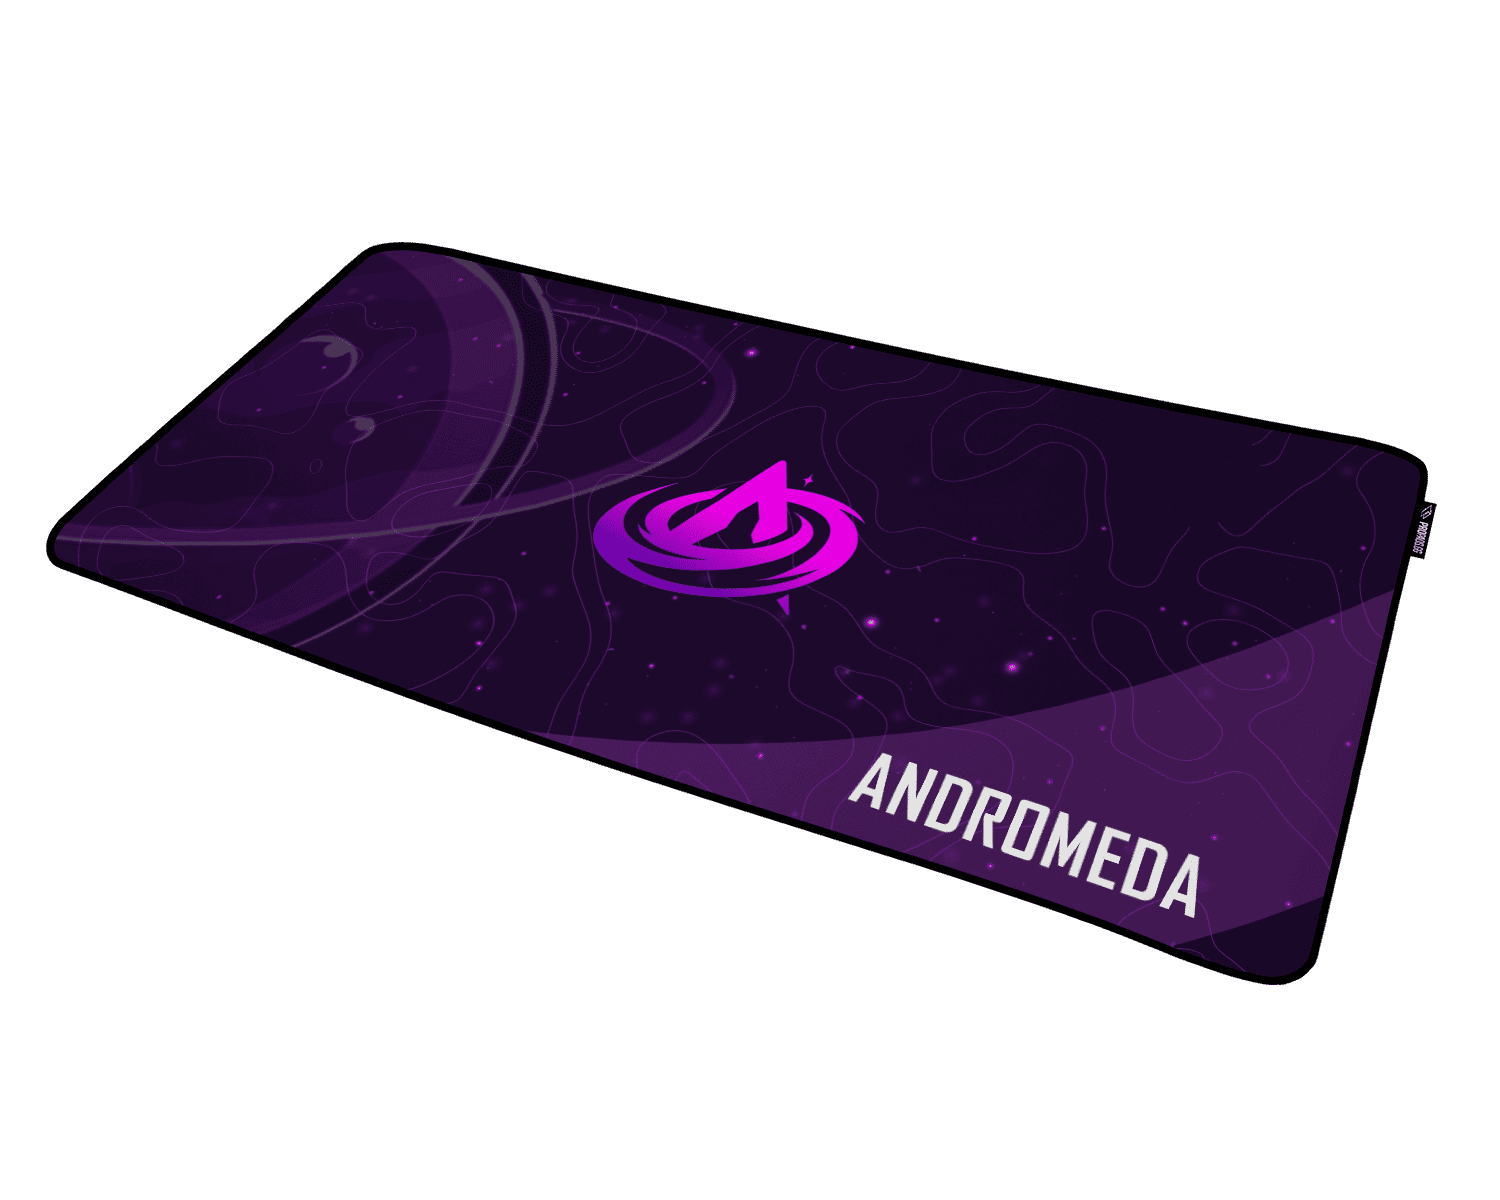 Andromeda Galaxy Mauspad